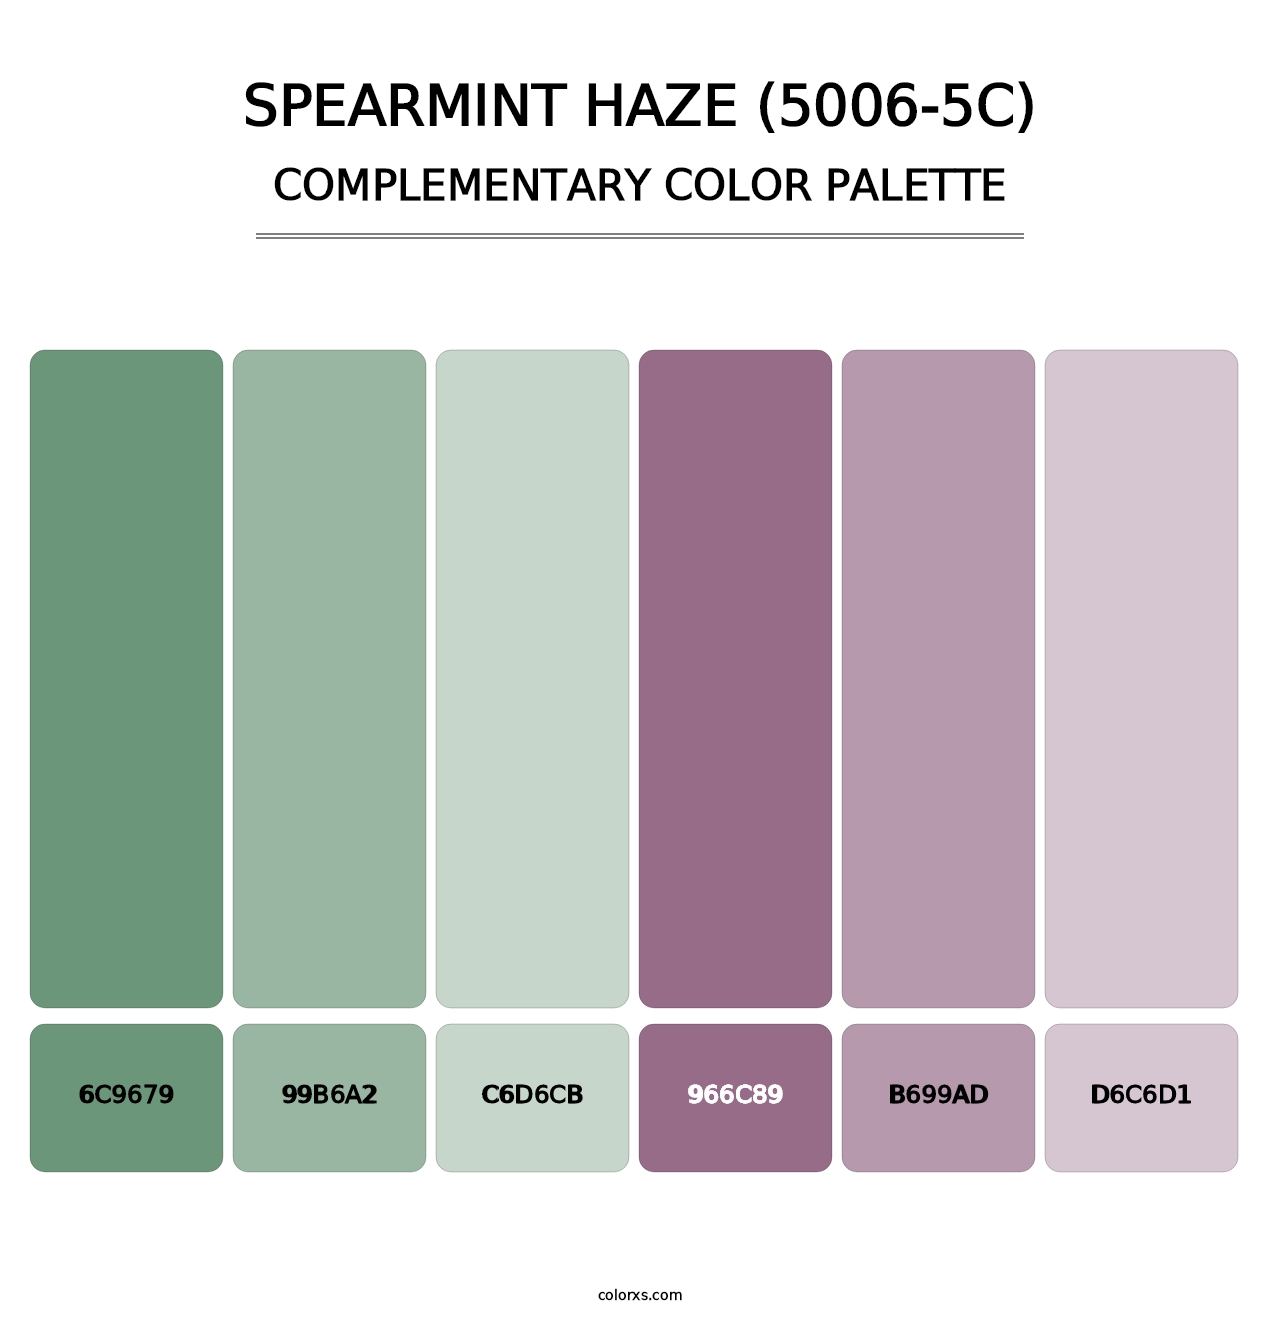 Spearmint Haze (5006-5C) - Complementary Color Palette